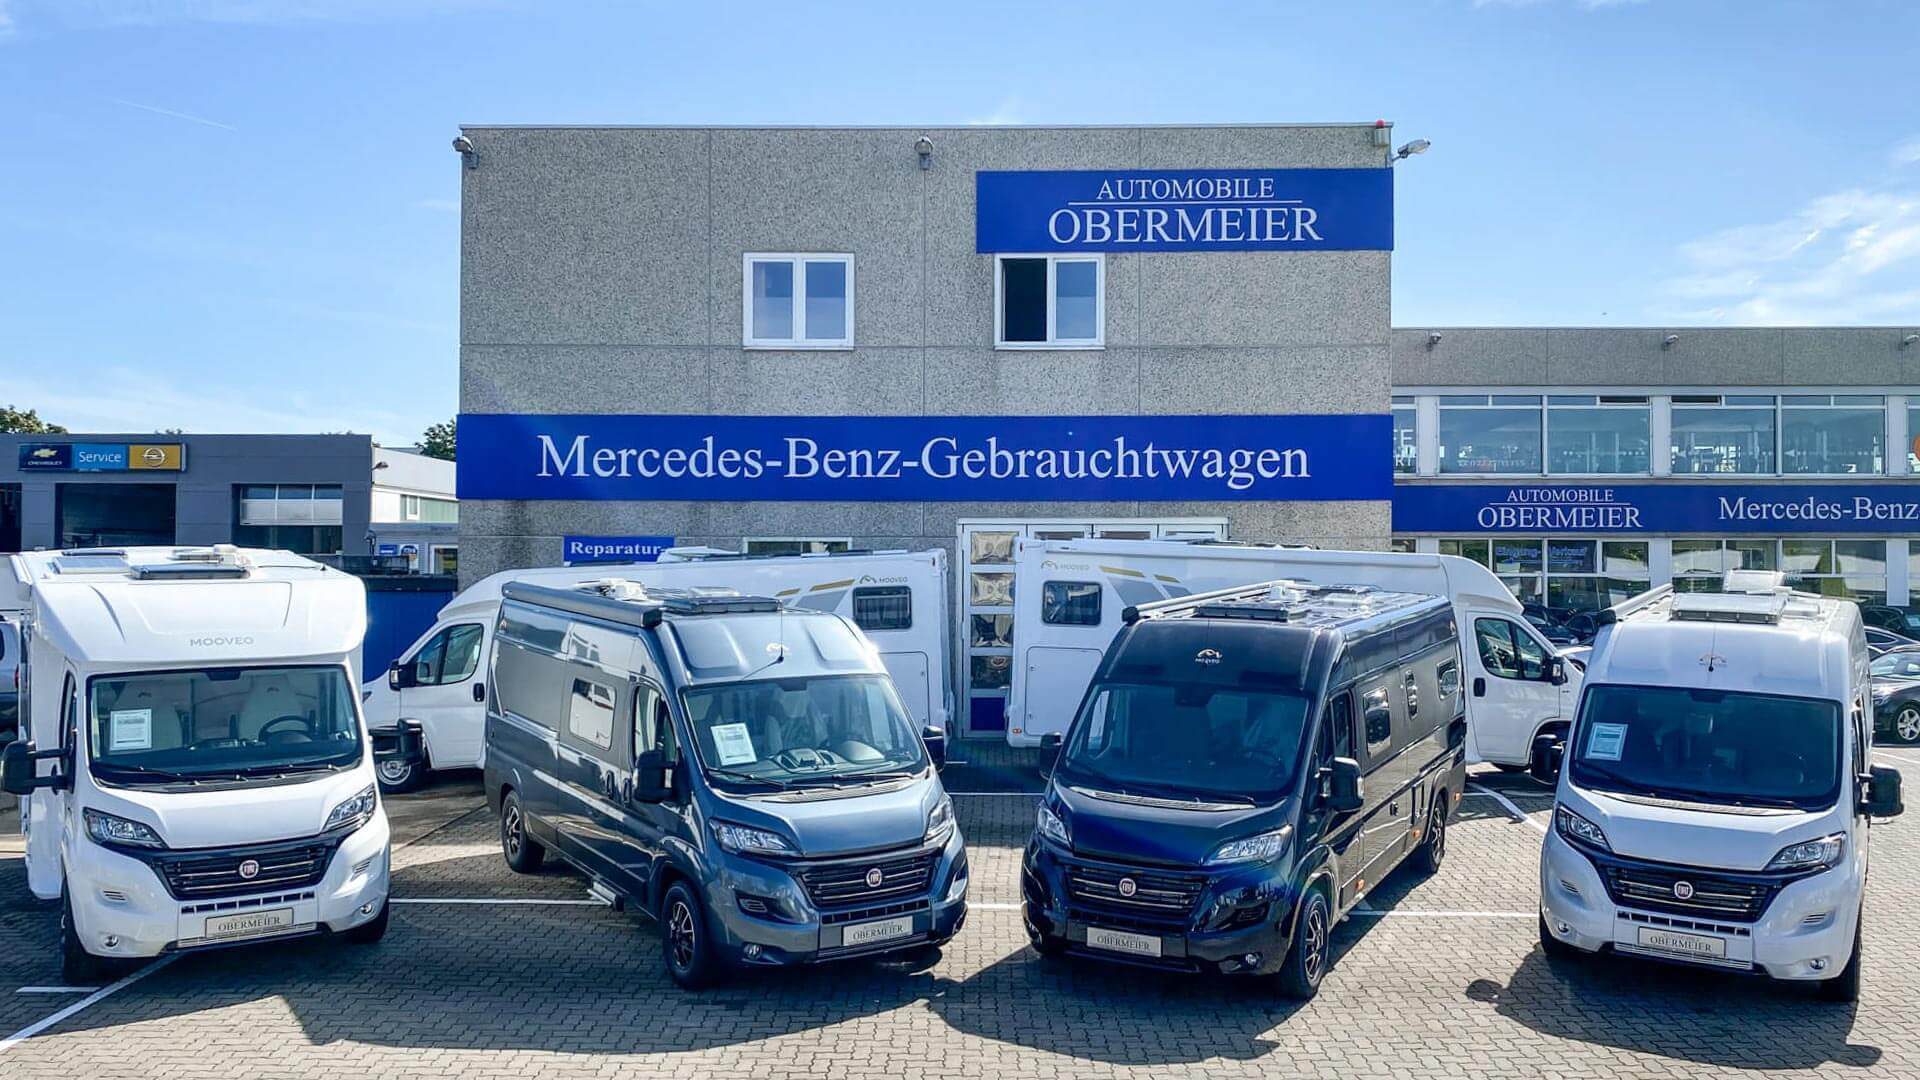 Mooveo-Wohnmobil im Außenbereich bei Automobile Obermeier in Meckenheim